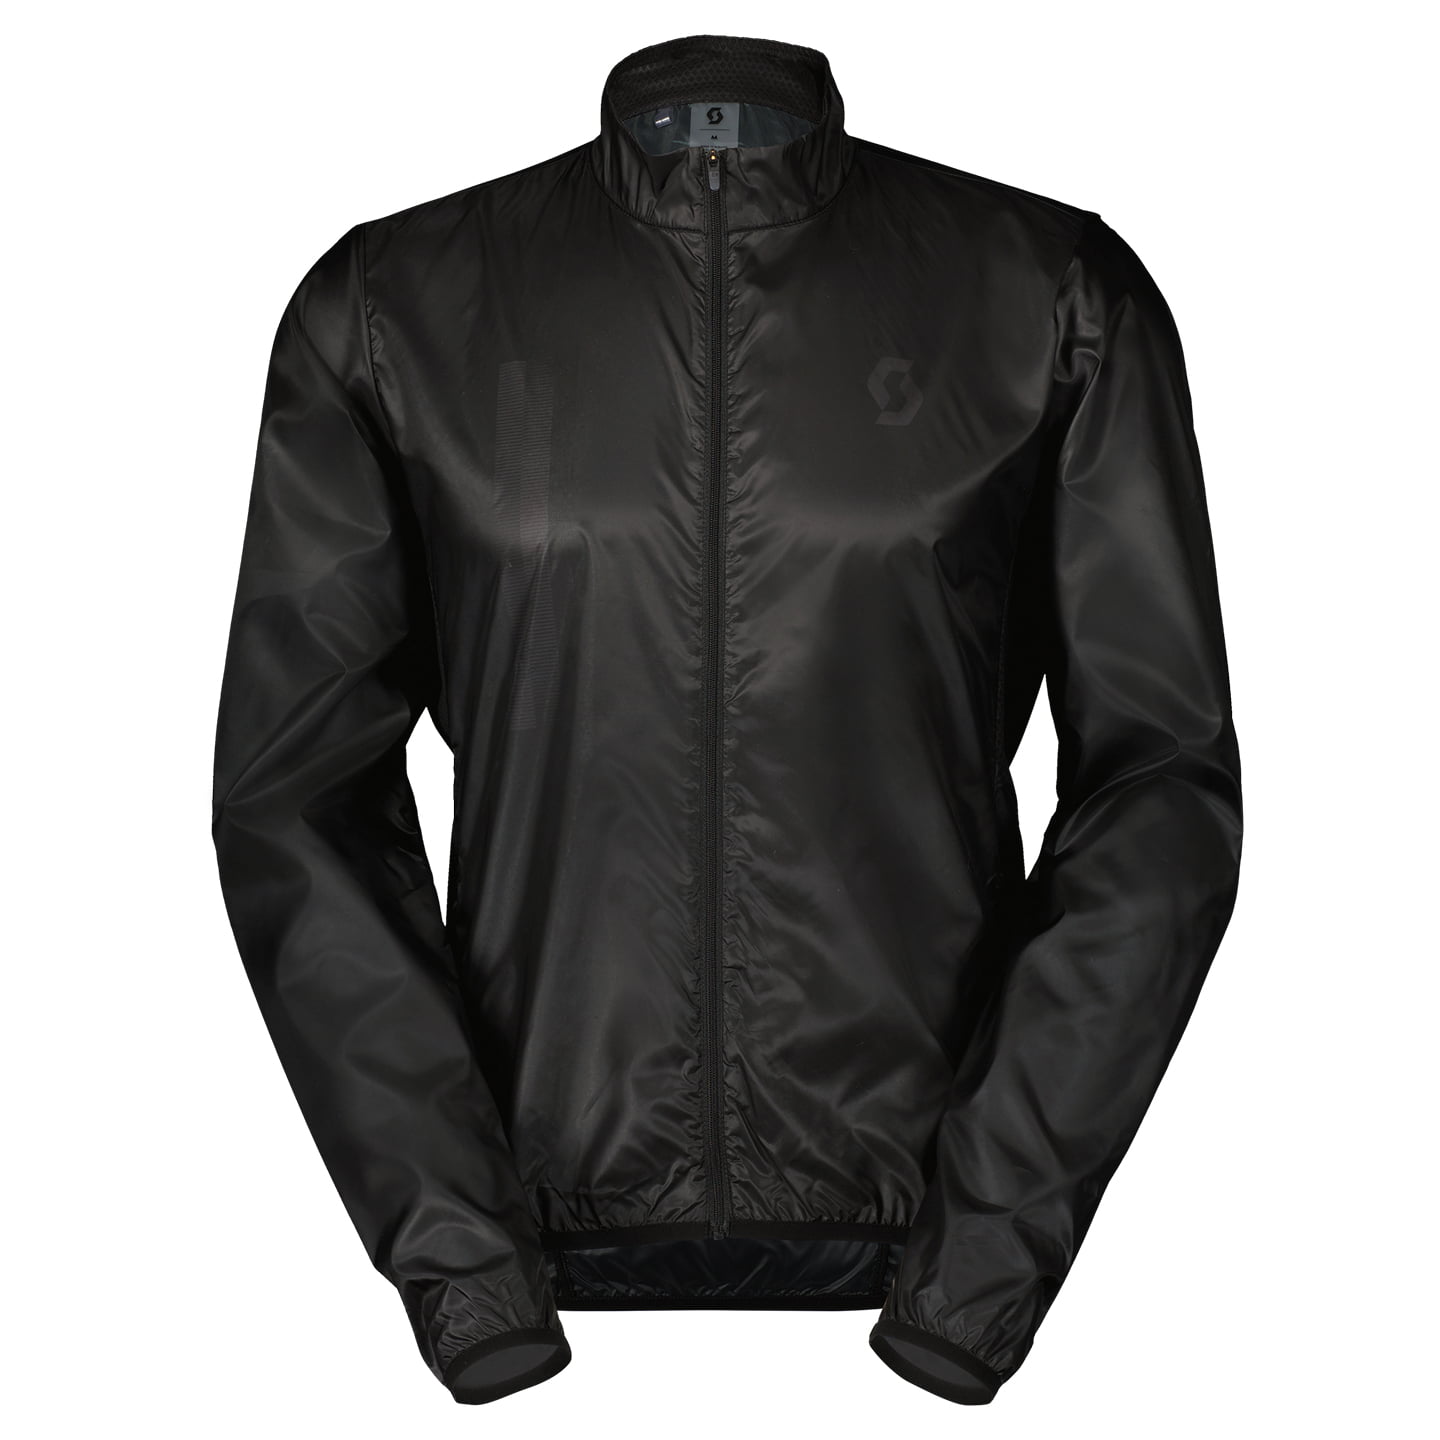 SCOTT RC Team Windbreaker Wind Jacket, for men, size S, Cycle jacket, Bike gear